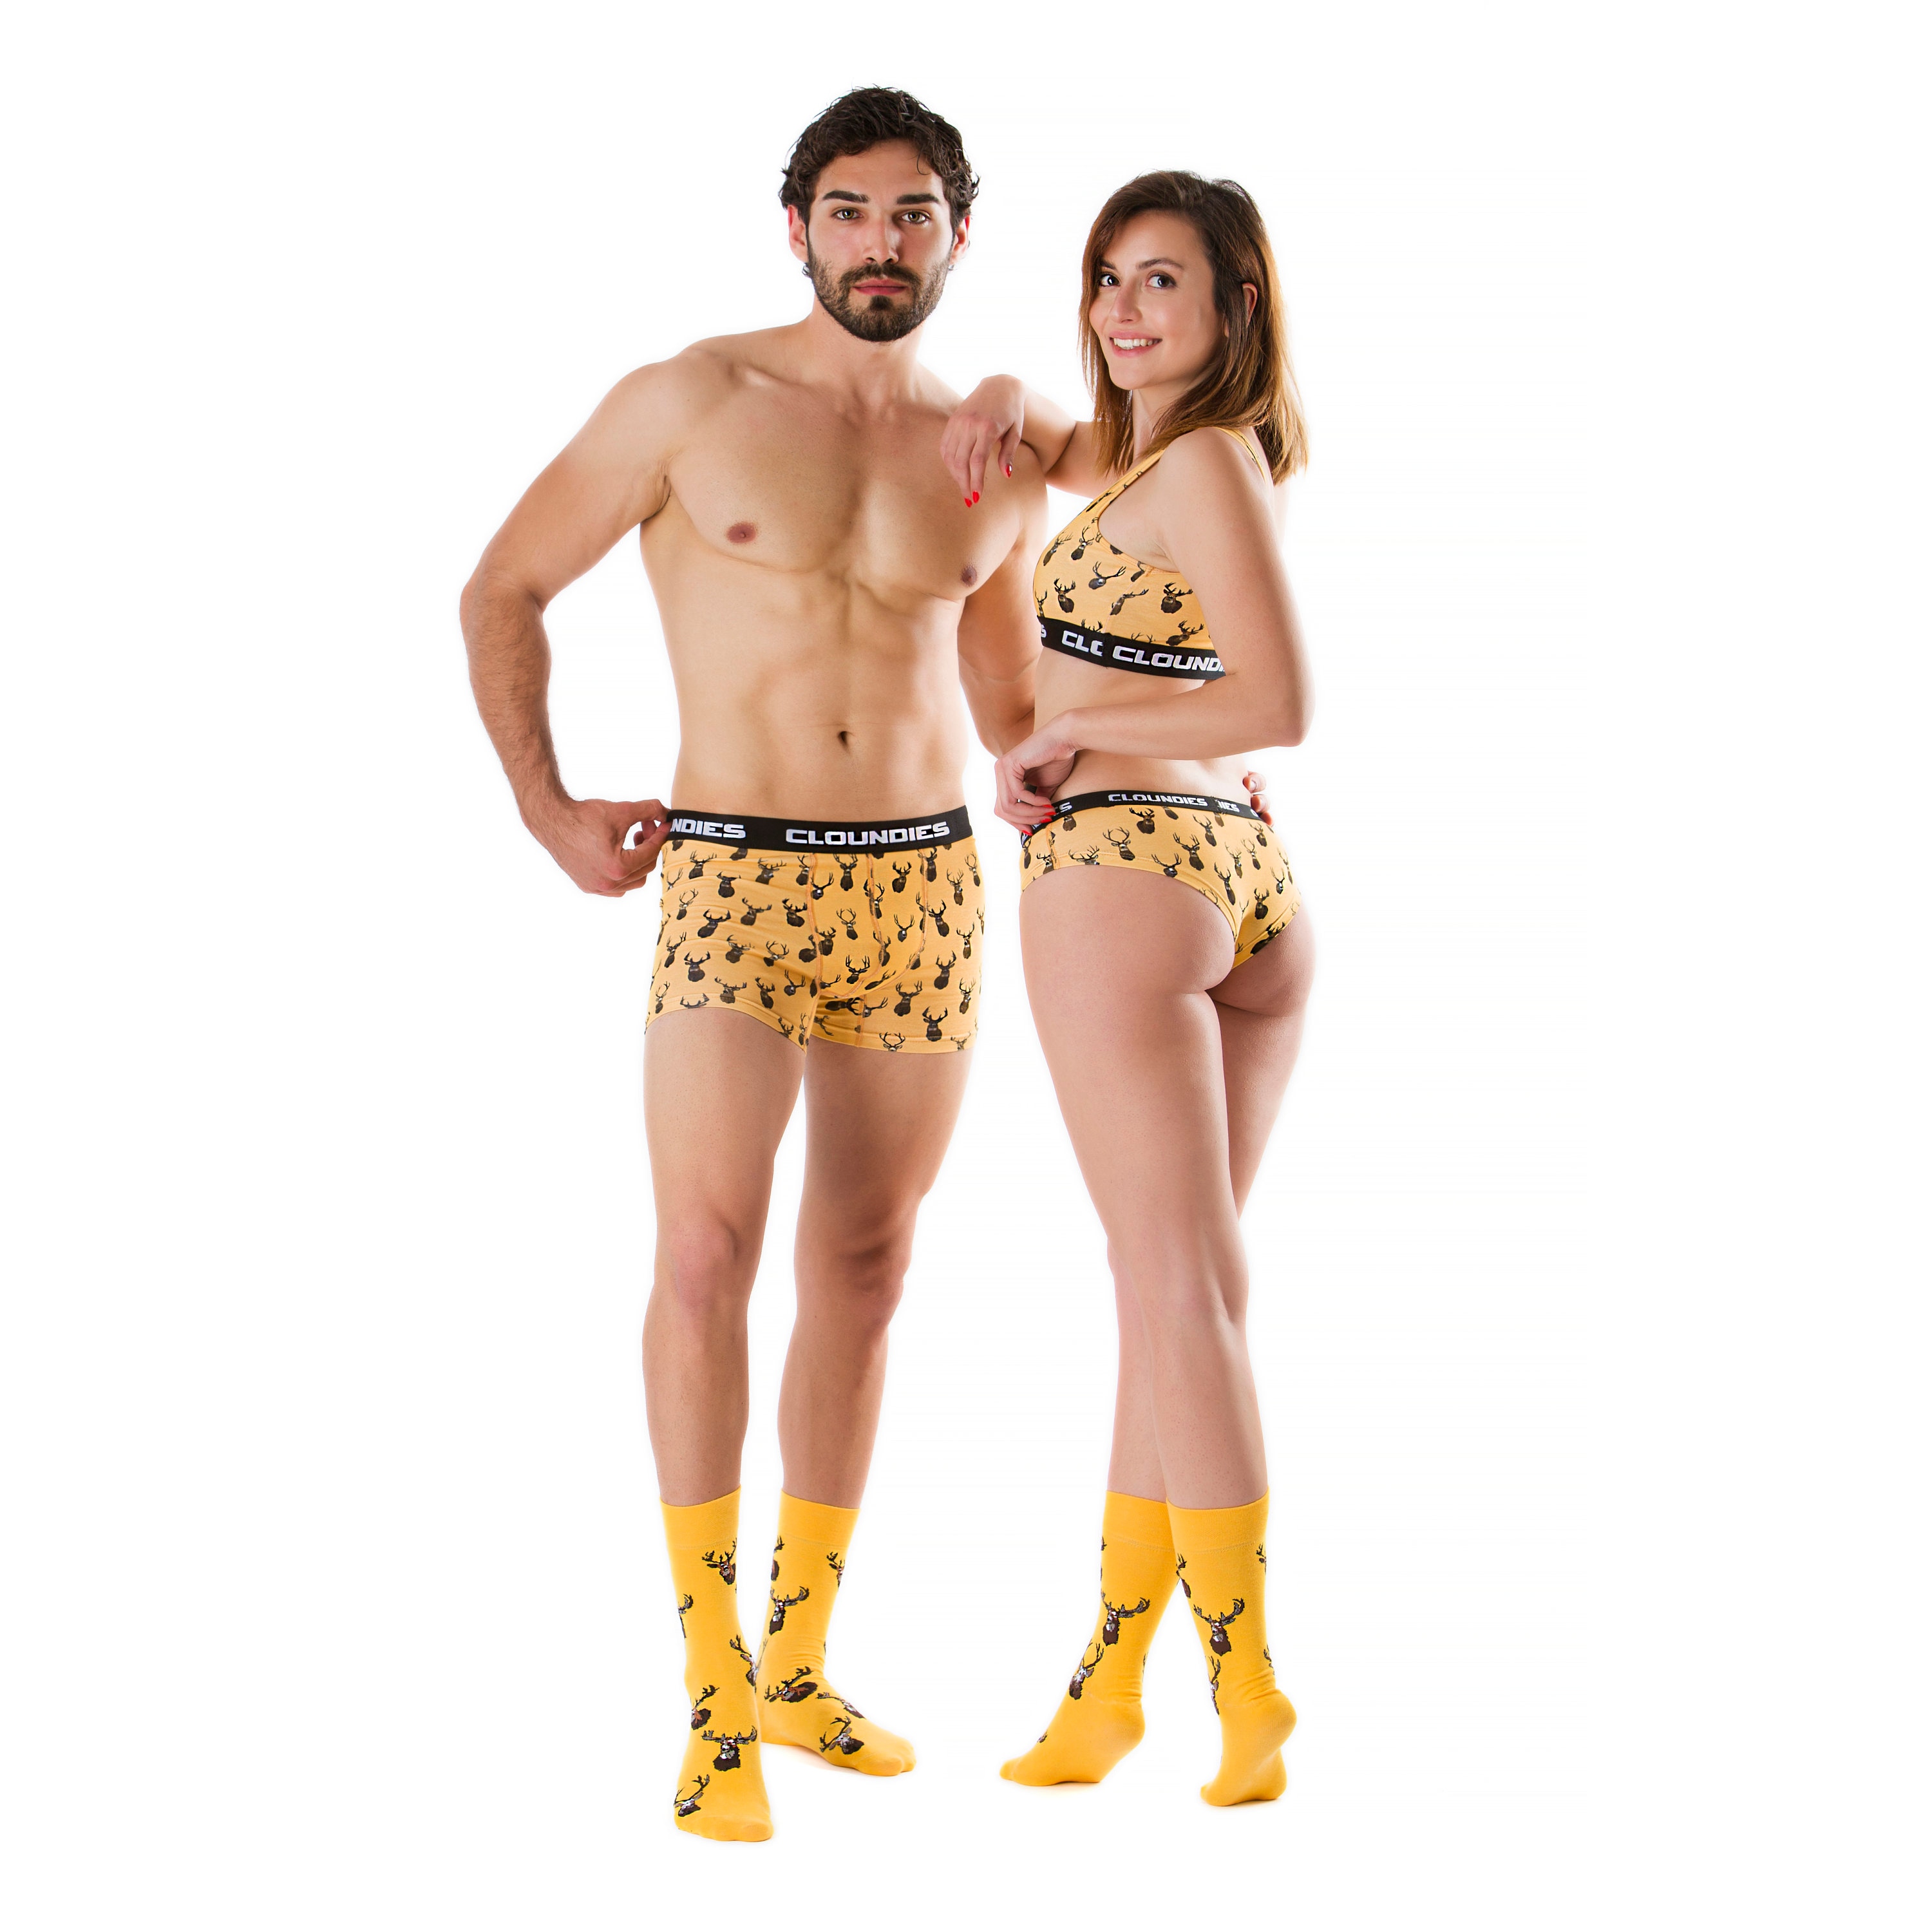 Couple Matching Underwear and Socks Set by Cloundies, Deer Hunter, Digital  Printed, Underwear Set 